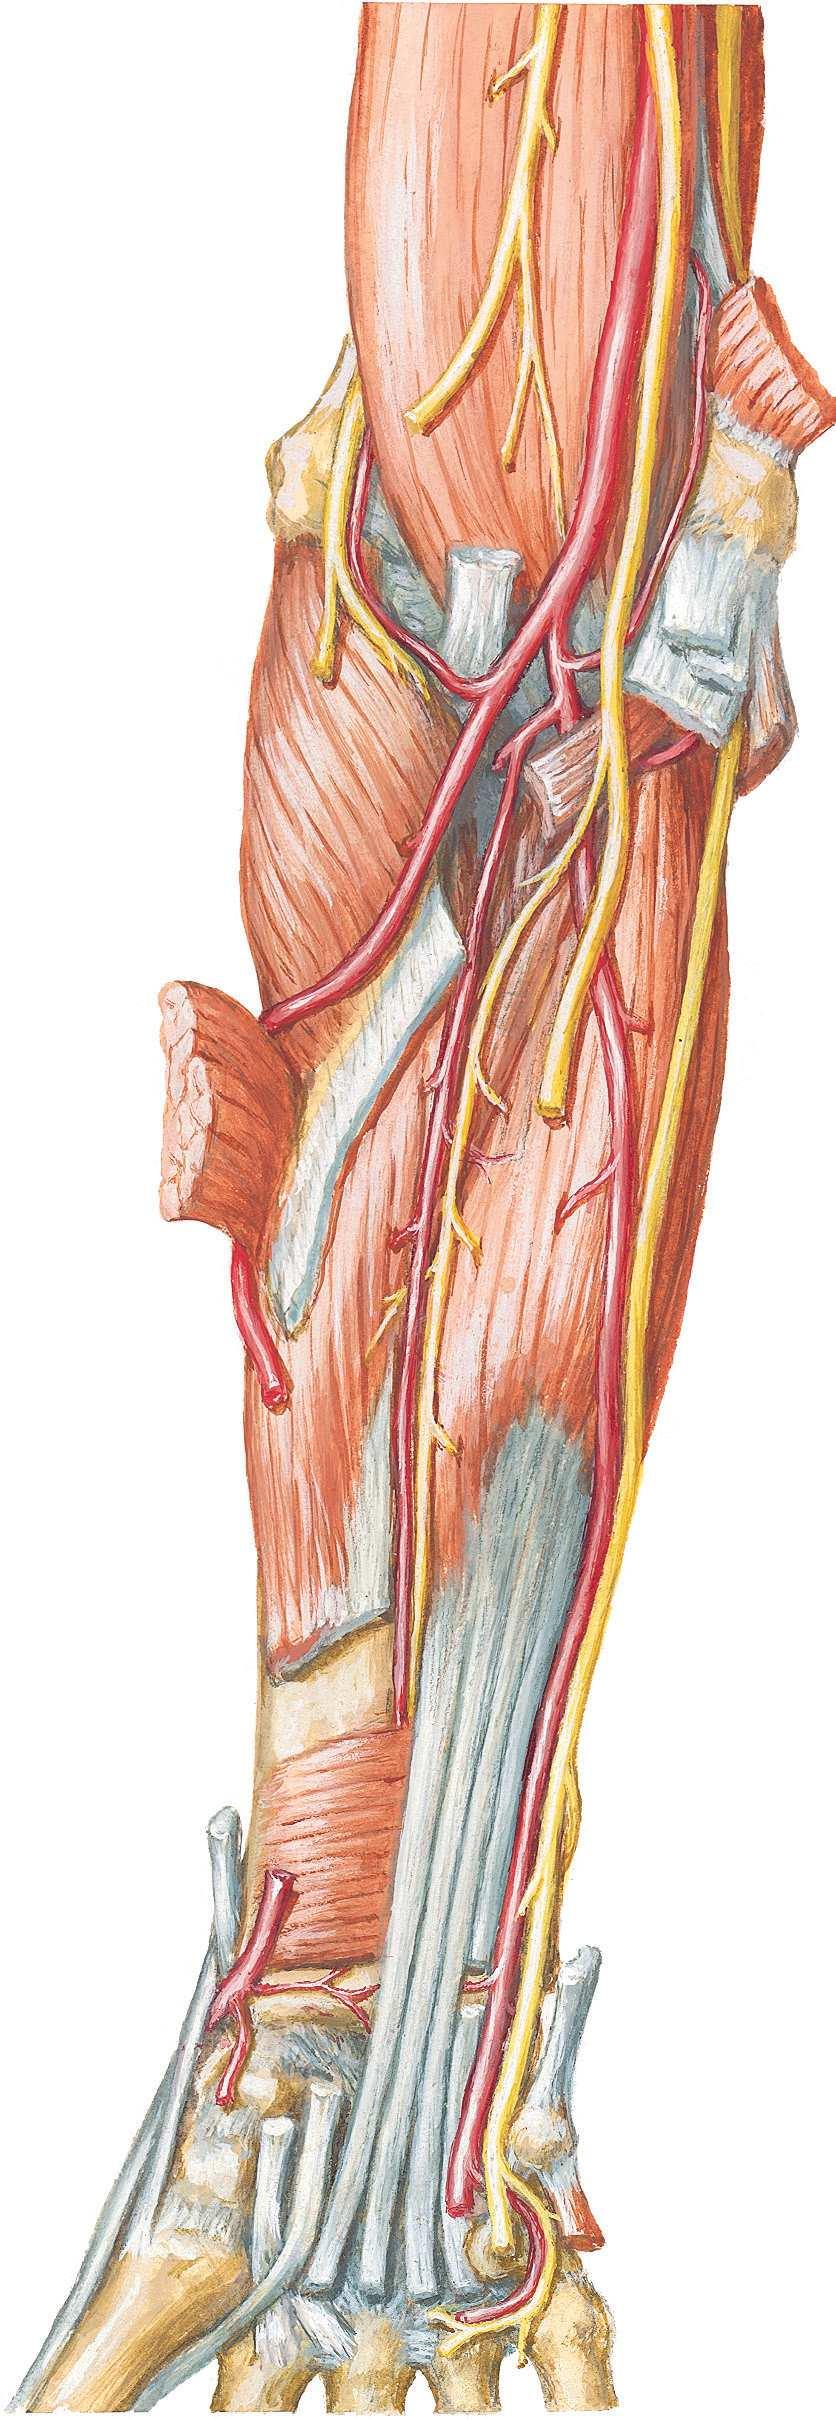 Anatomie Nerfs Nerfs Figure 10-8. Nerfs de l'avant-bras : vue antérieure.